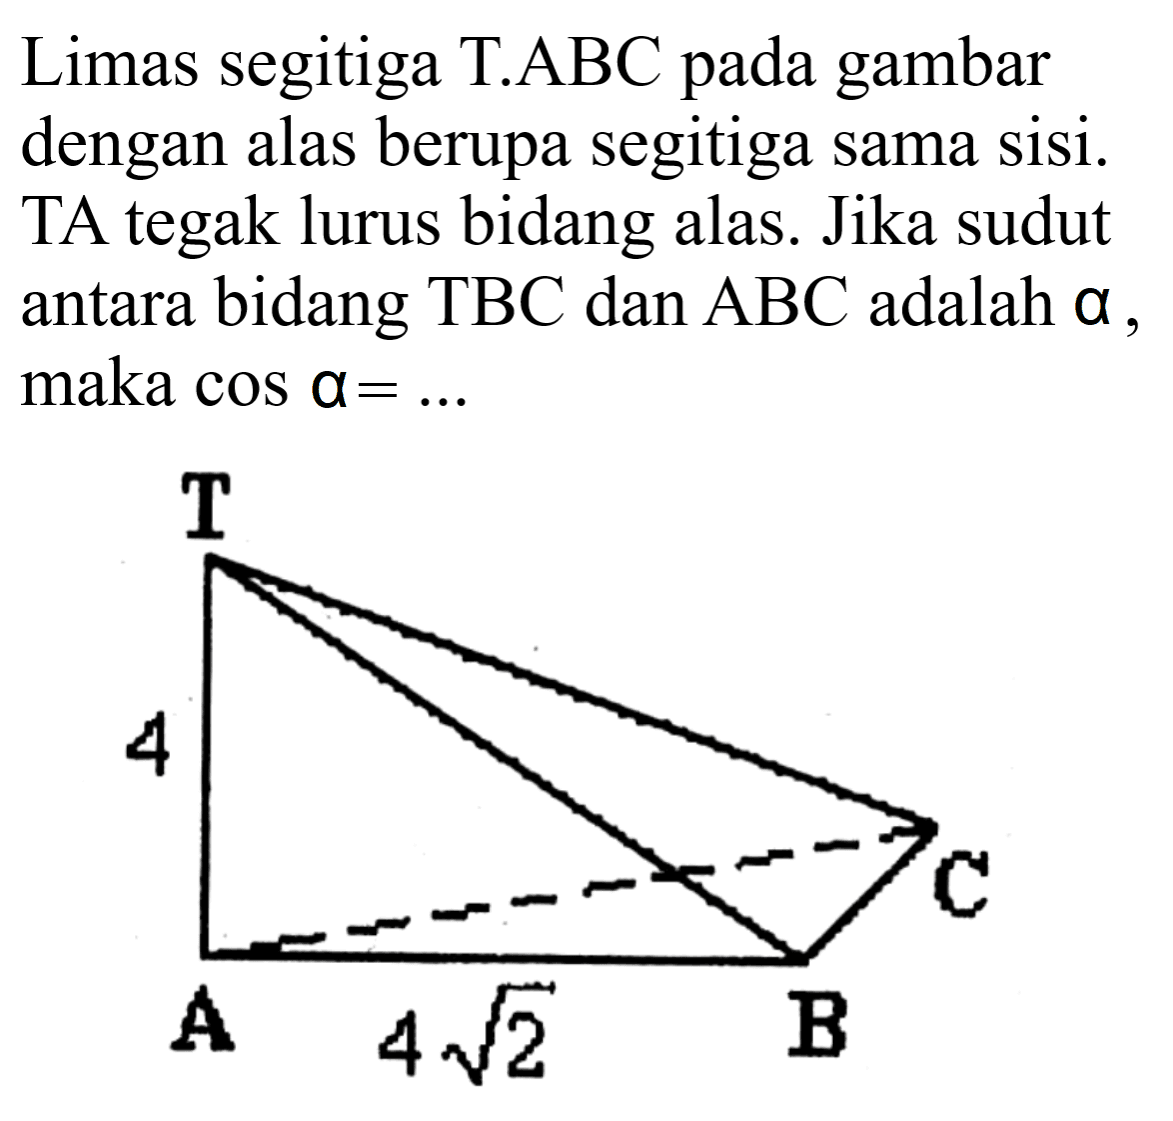 Limas segitiga  T . ABC  pada gambar dengan alas berupa segitiga sama sisi. TA tegak lurus bidang alas. Jika sudut antara bidang TBC dan  A B C  adalah  a , maka  cos a=... .